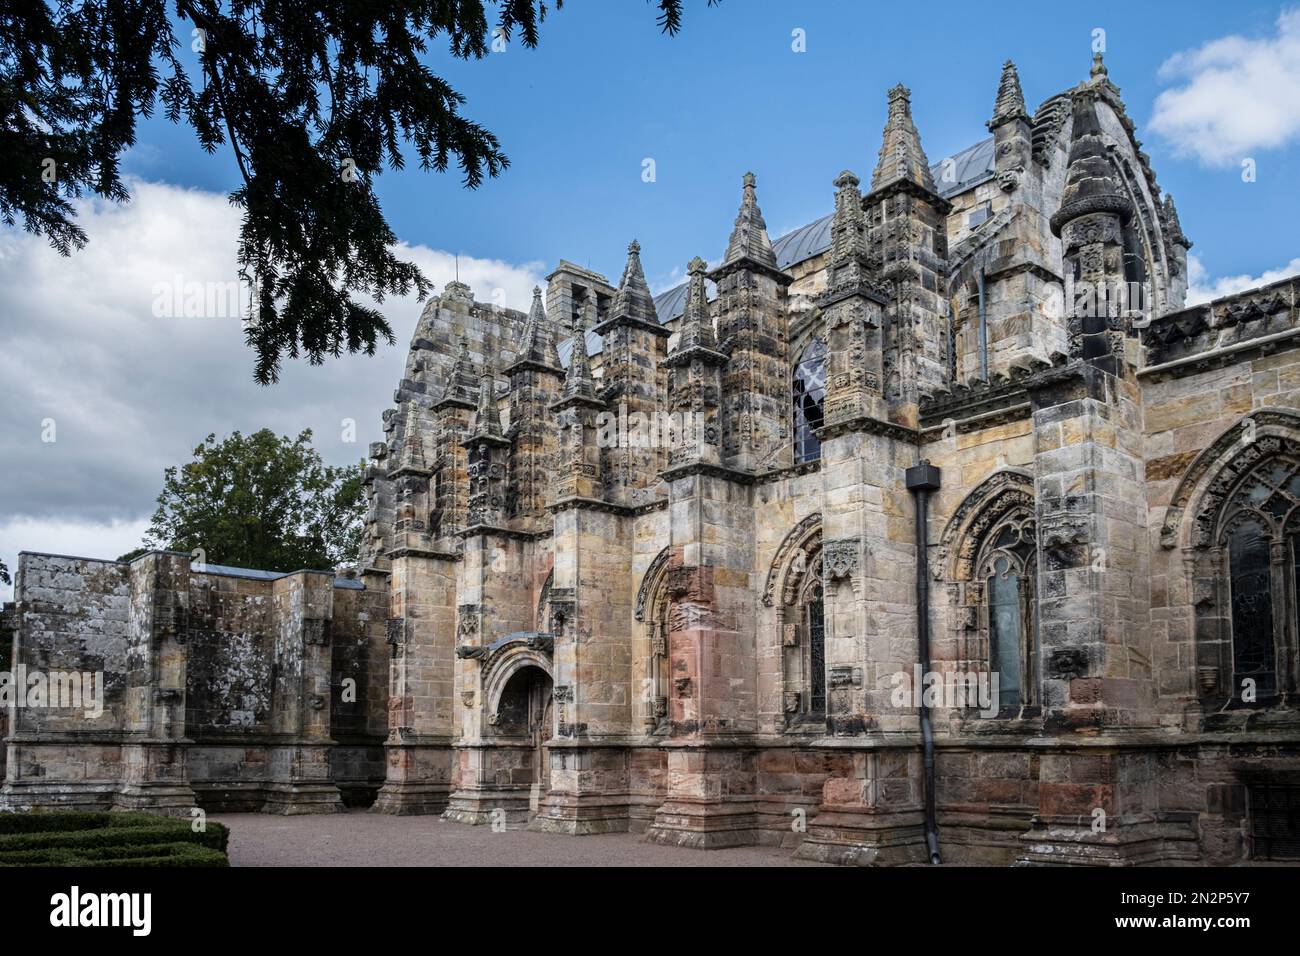 Scozia, Roslin, Midlothian, Rosslyn Chapel. Esterno della cappella gotica che mostra contrafforti volanti. Nessuna gente. Foto Stock